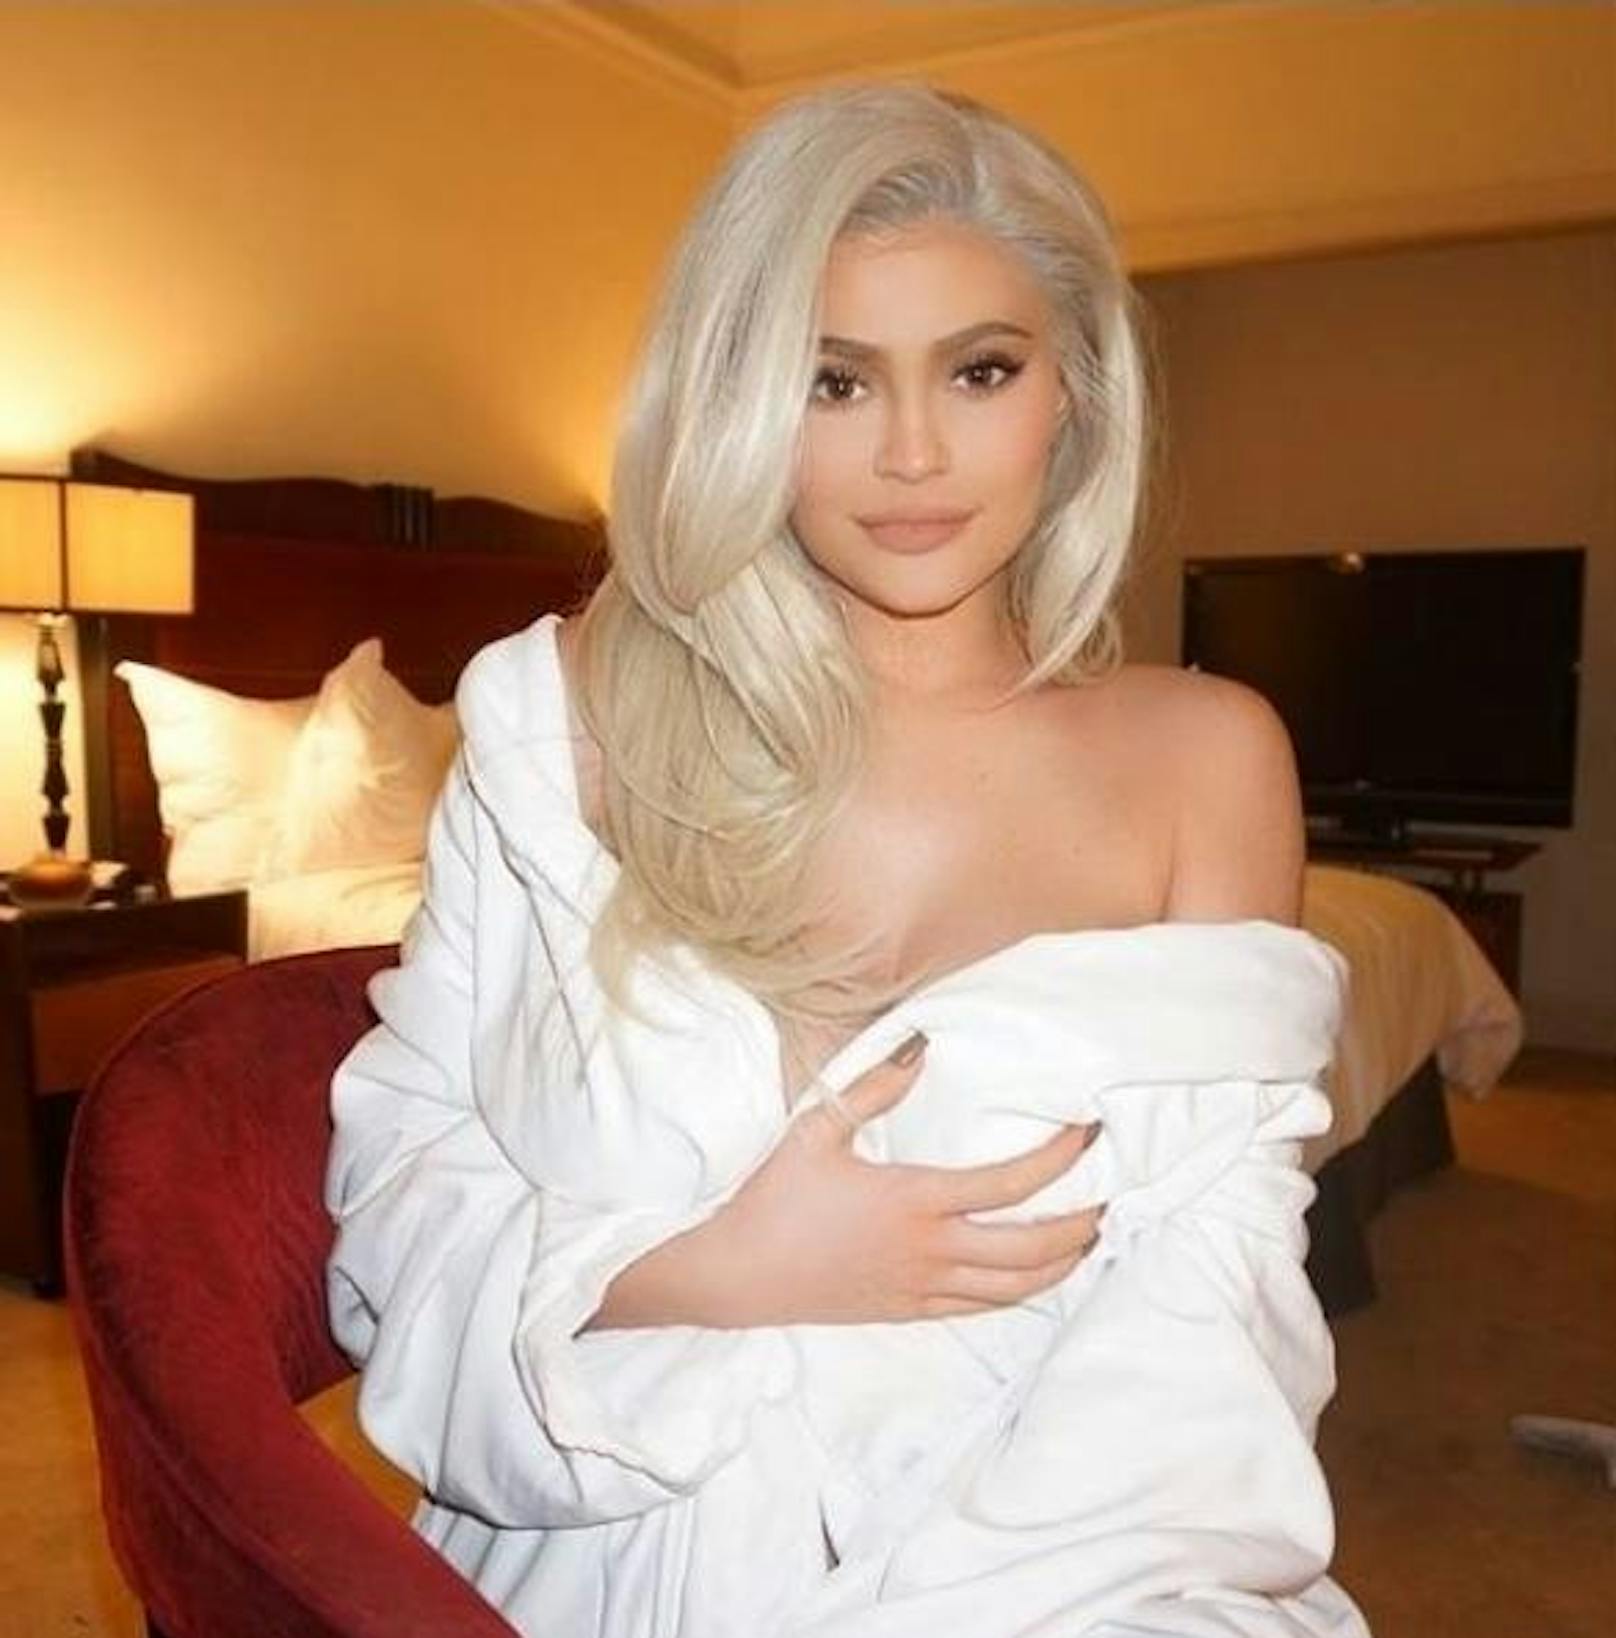 24.03.2018: Kylie Jenner ist wieder blond. Zu einem Instagram-Foto schrieb sie, dass sie für diese Haarfarbe bestimmt sei.